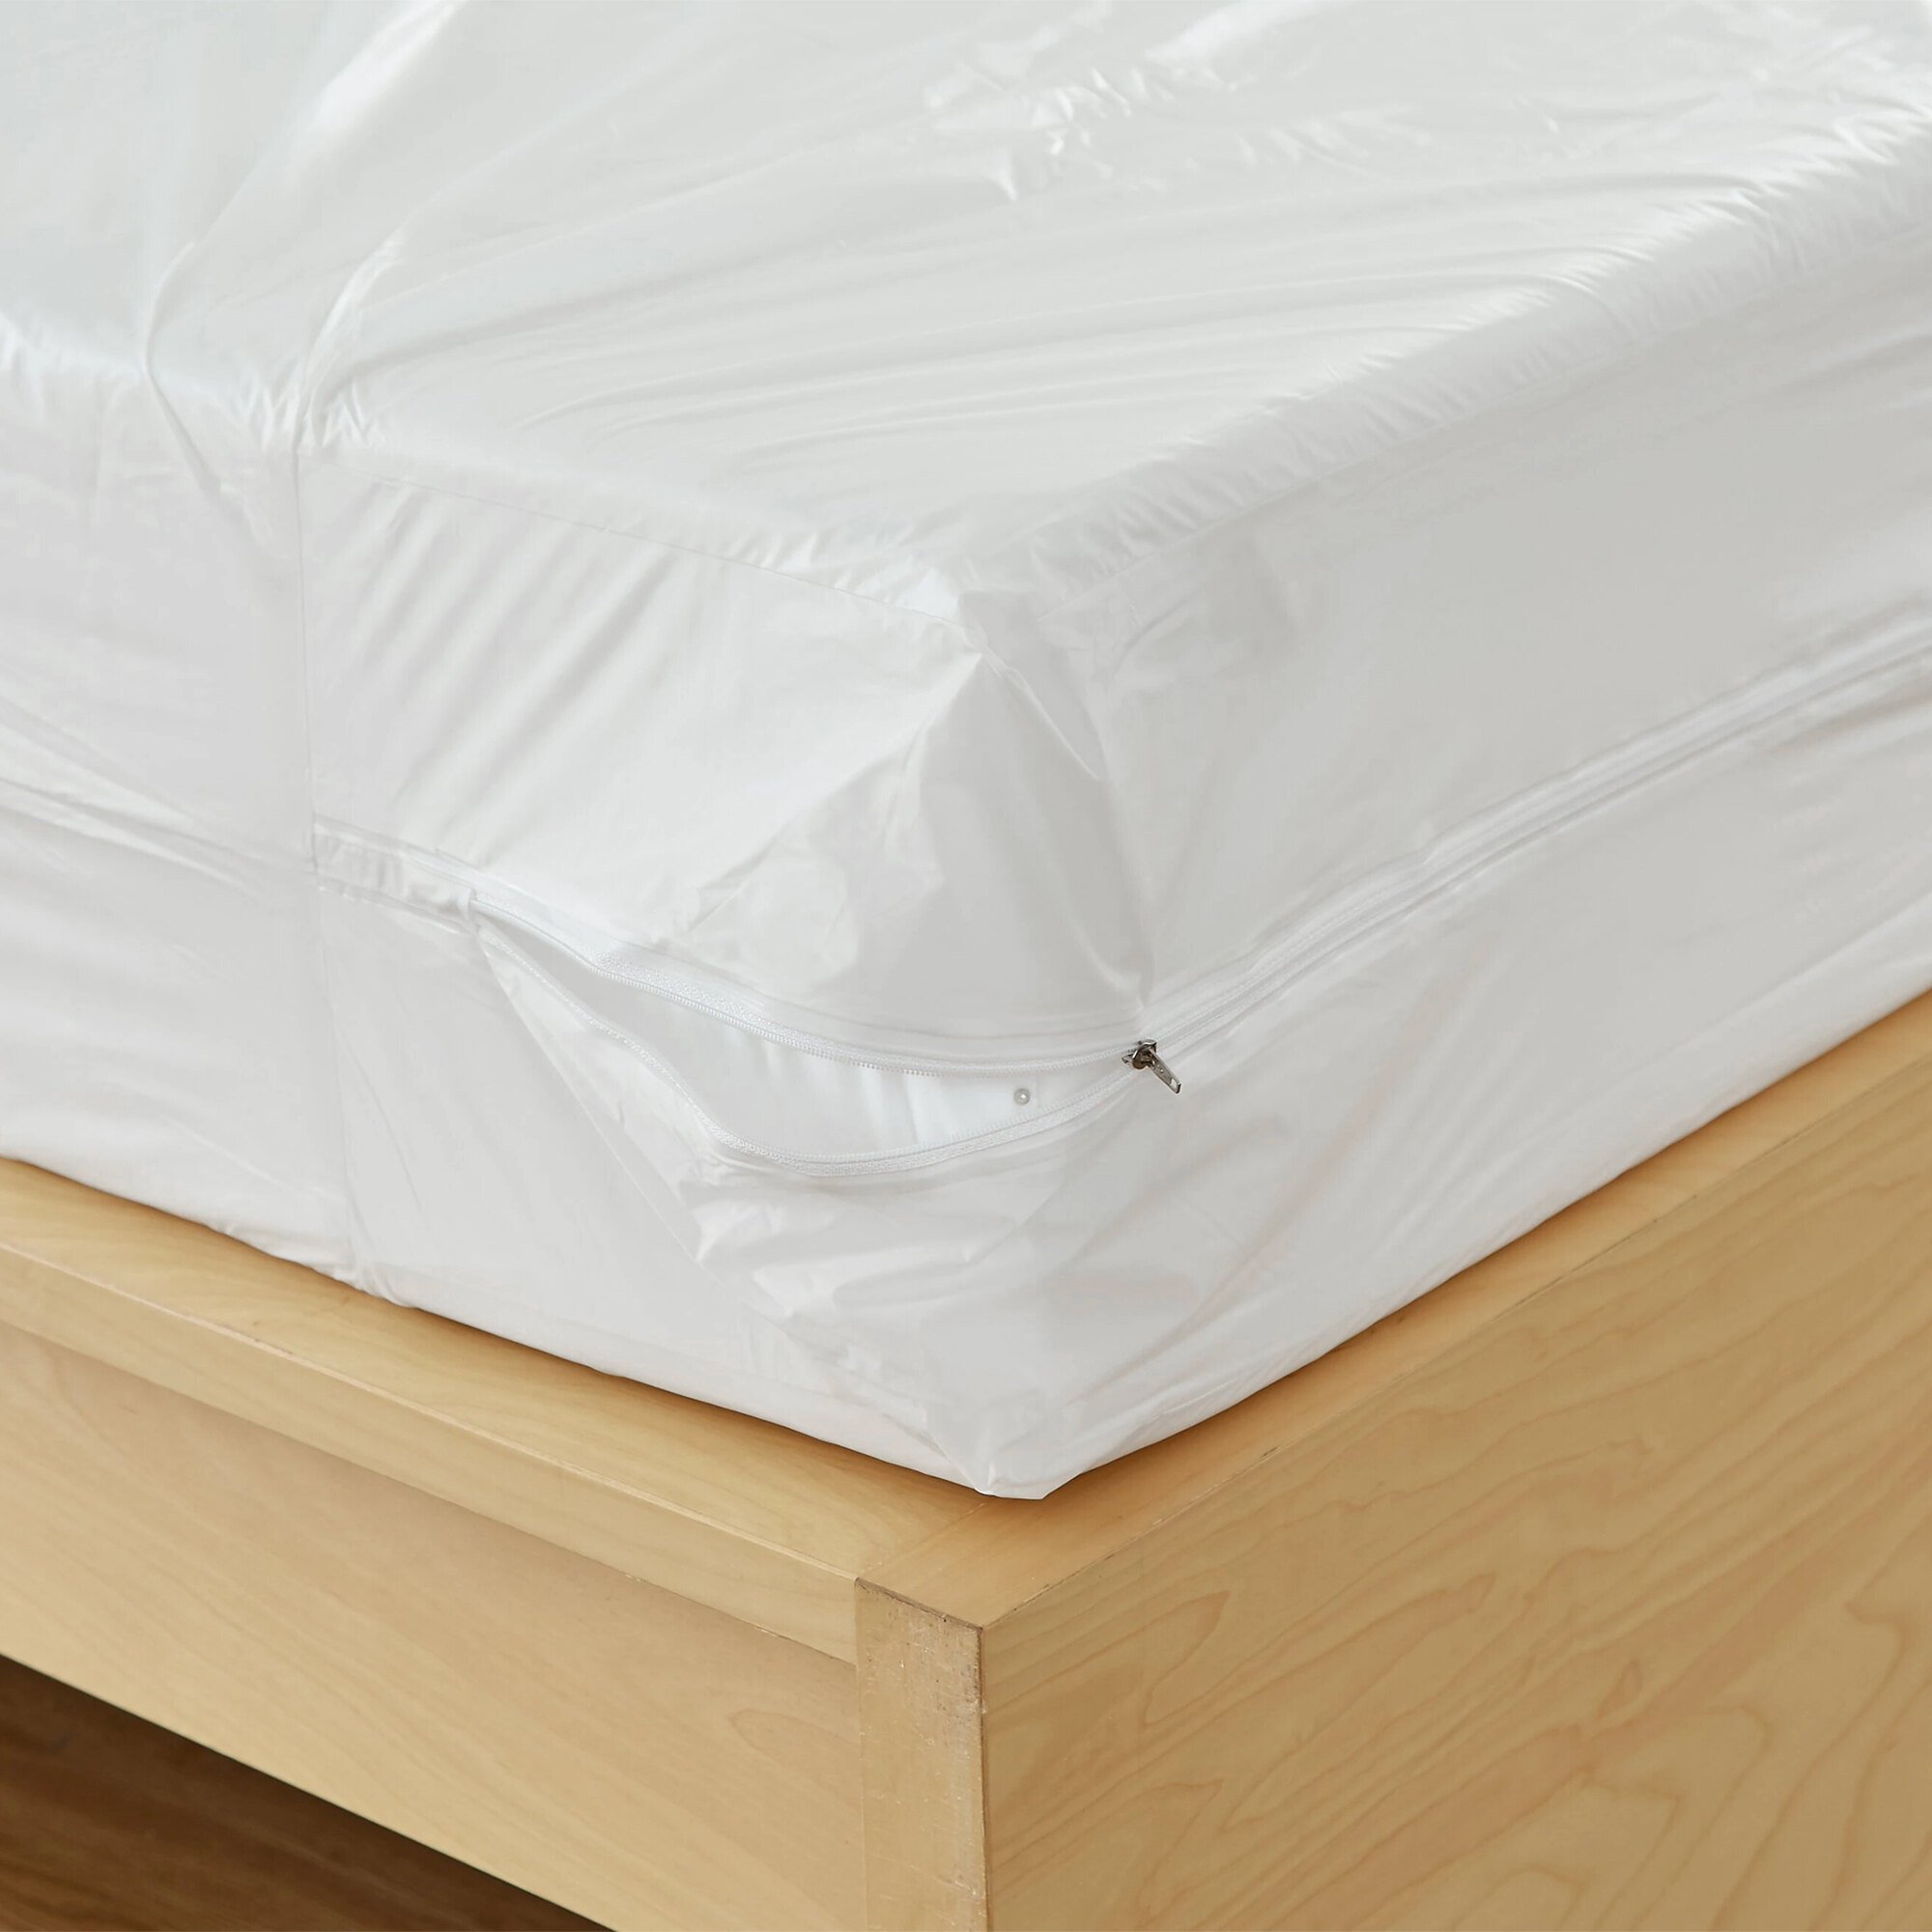 walmart bed bug mattress cover